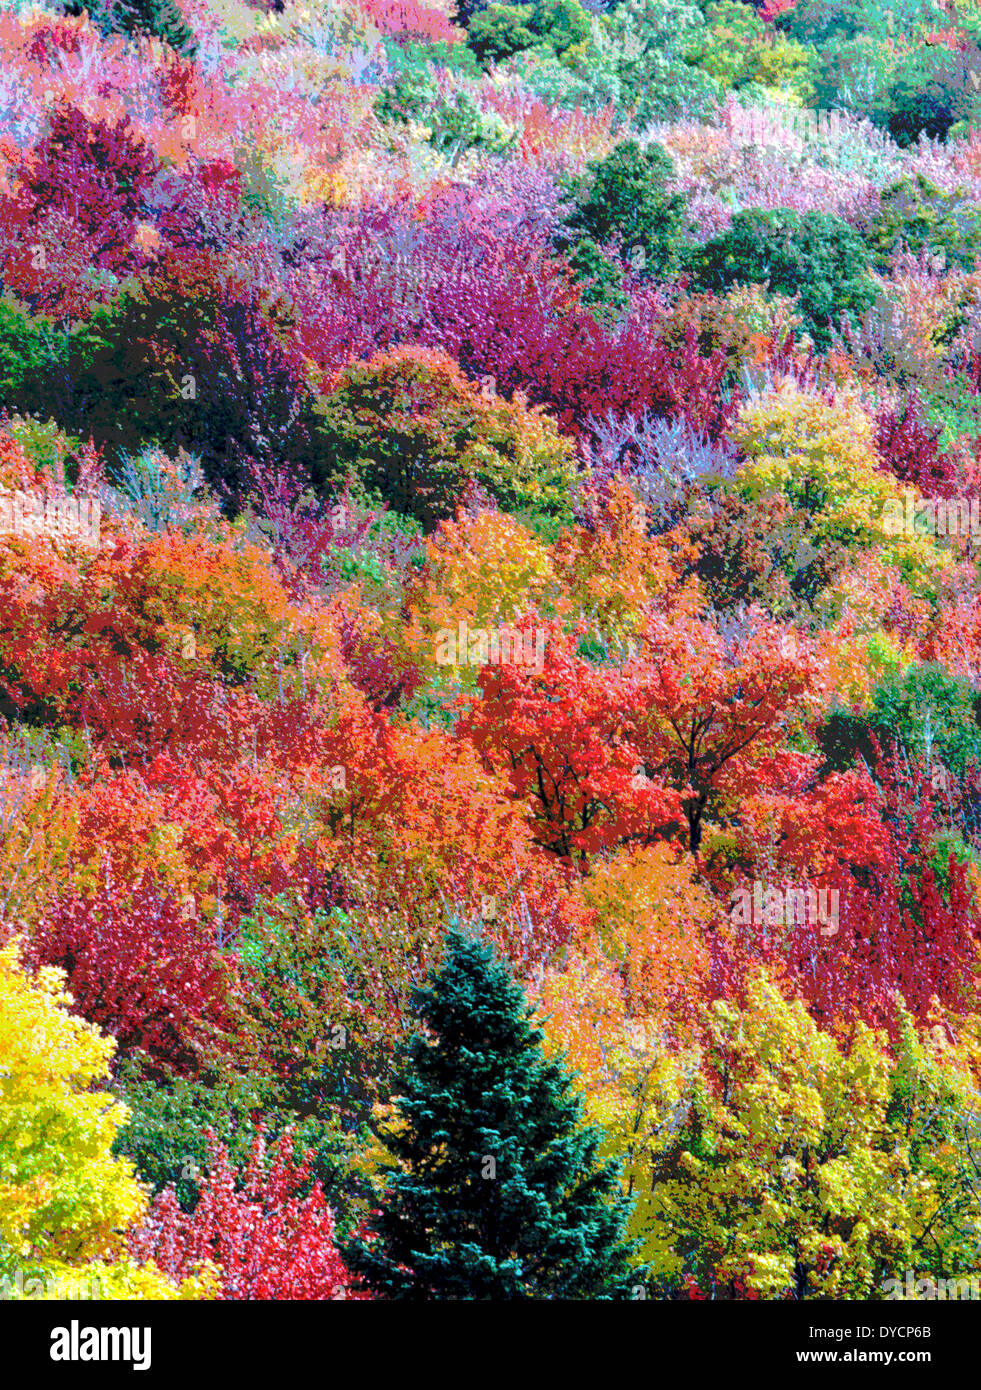 Die bunten Blätter der Bäume im Herbst in New England, USA, wurden digital verändert, um eine lebendige Gemälde von Herbstlaub zu erstellen. Stockfoto